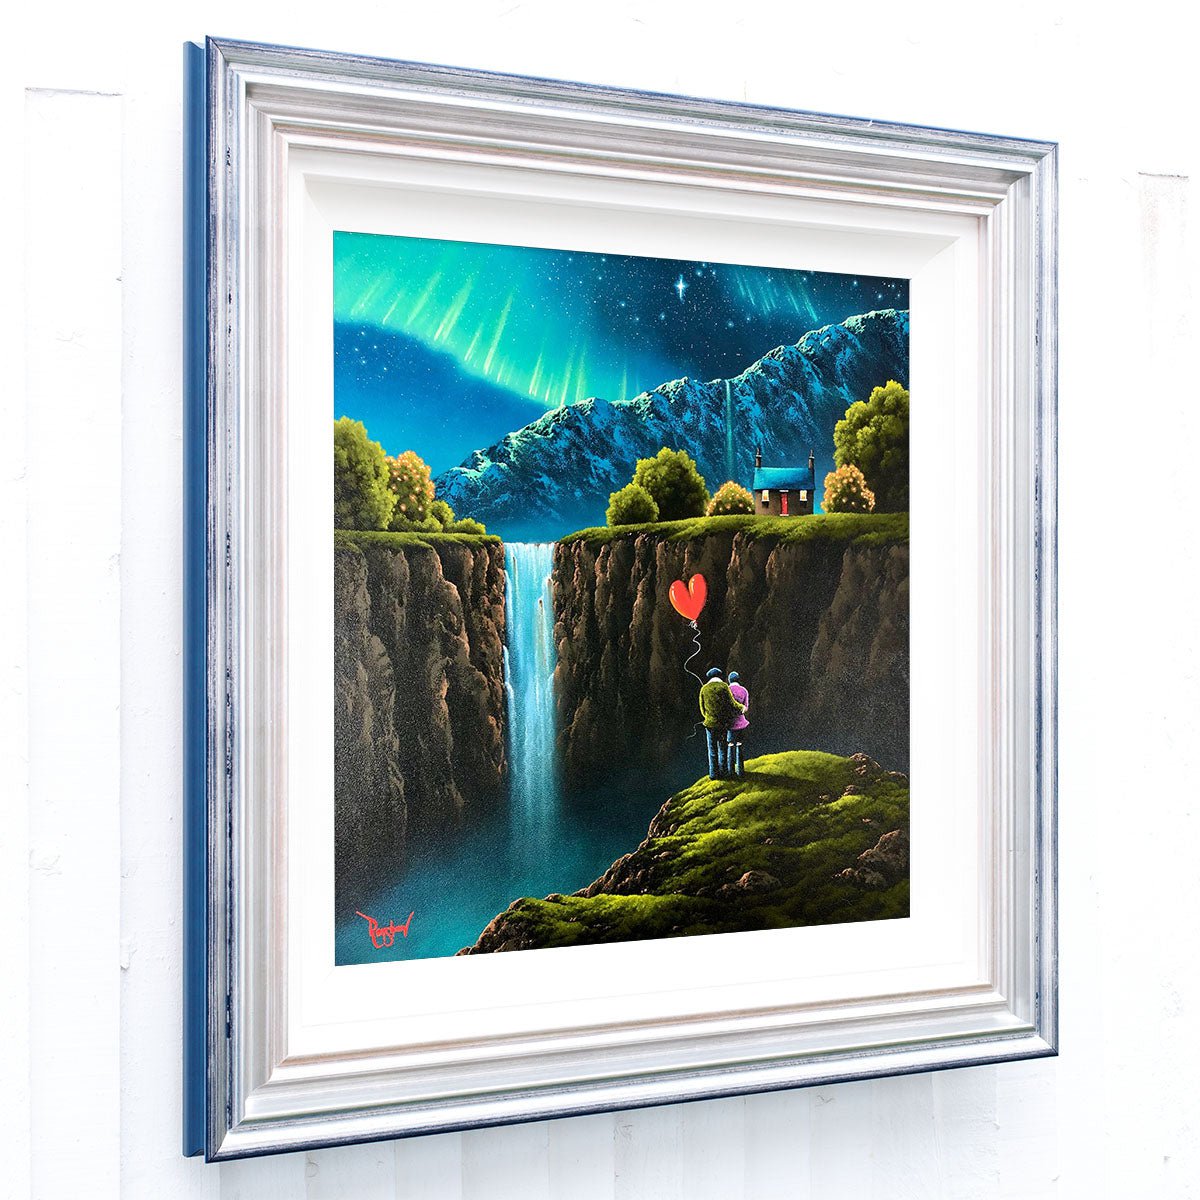 Chasing Waterfalls - Original David Renshaw Original